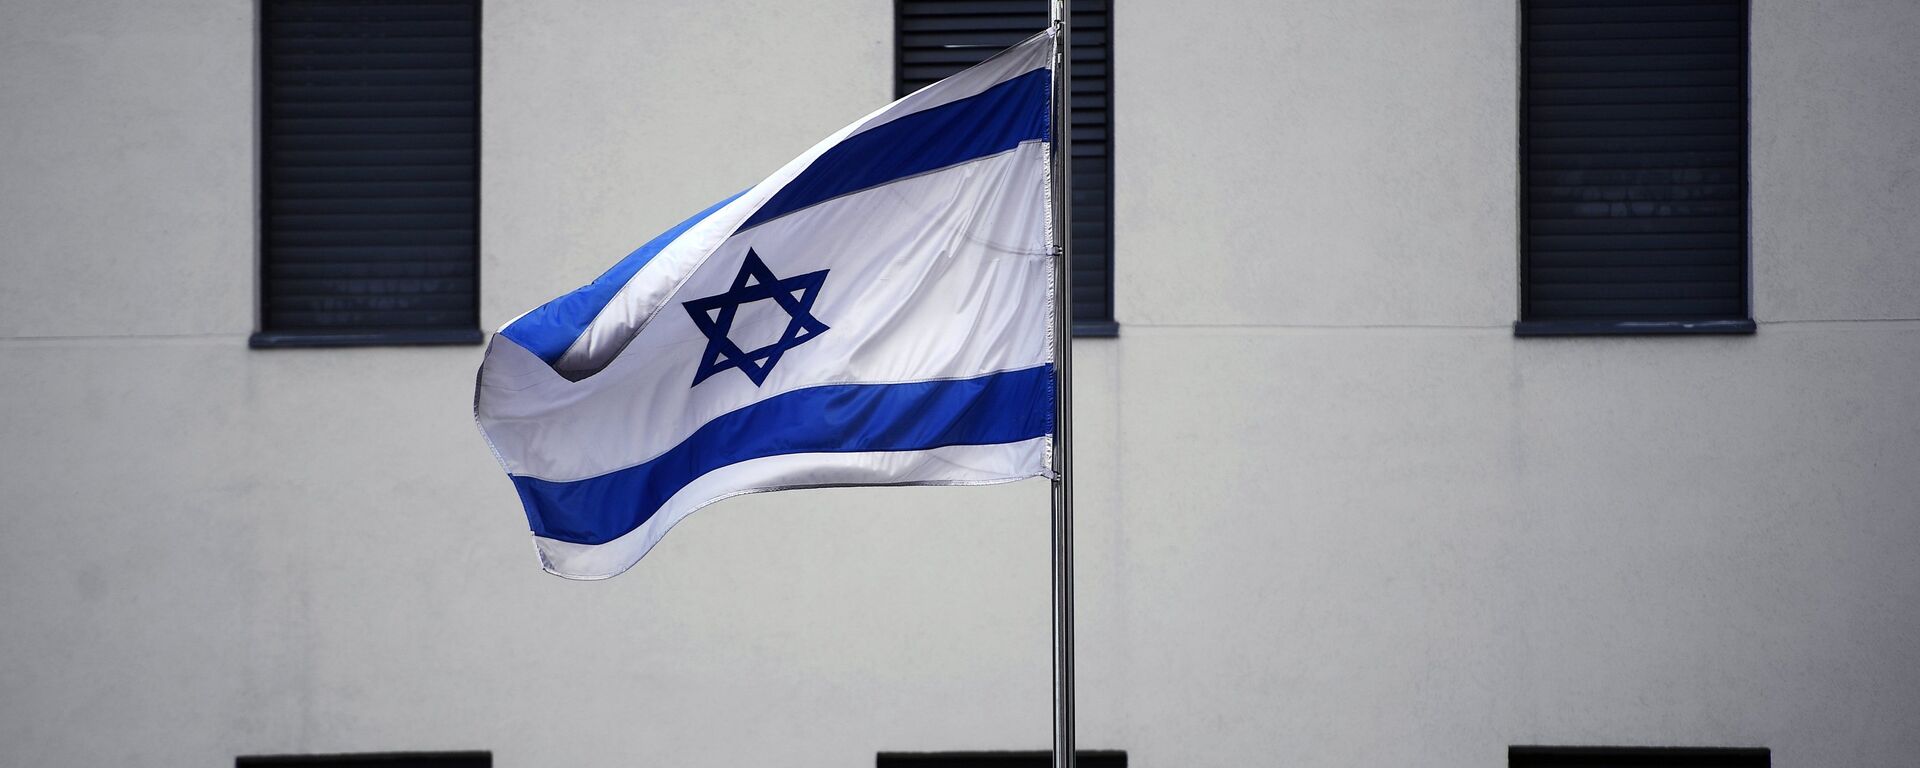 Bandera de Israel en el edificio de la Embajada israelí en Moscú (archivo) - Sputnik Mundo, 1920, 14.03.2021